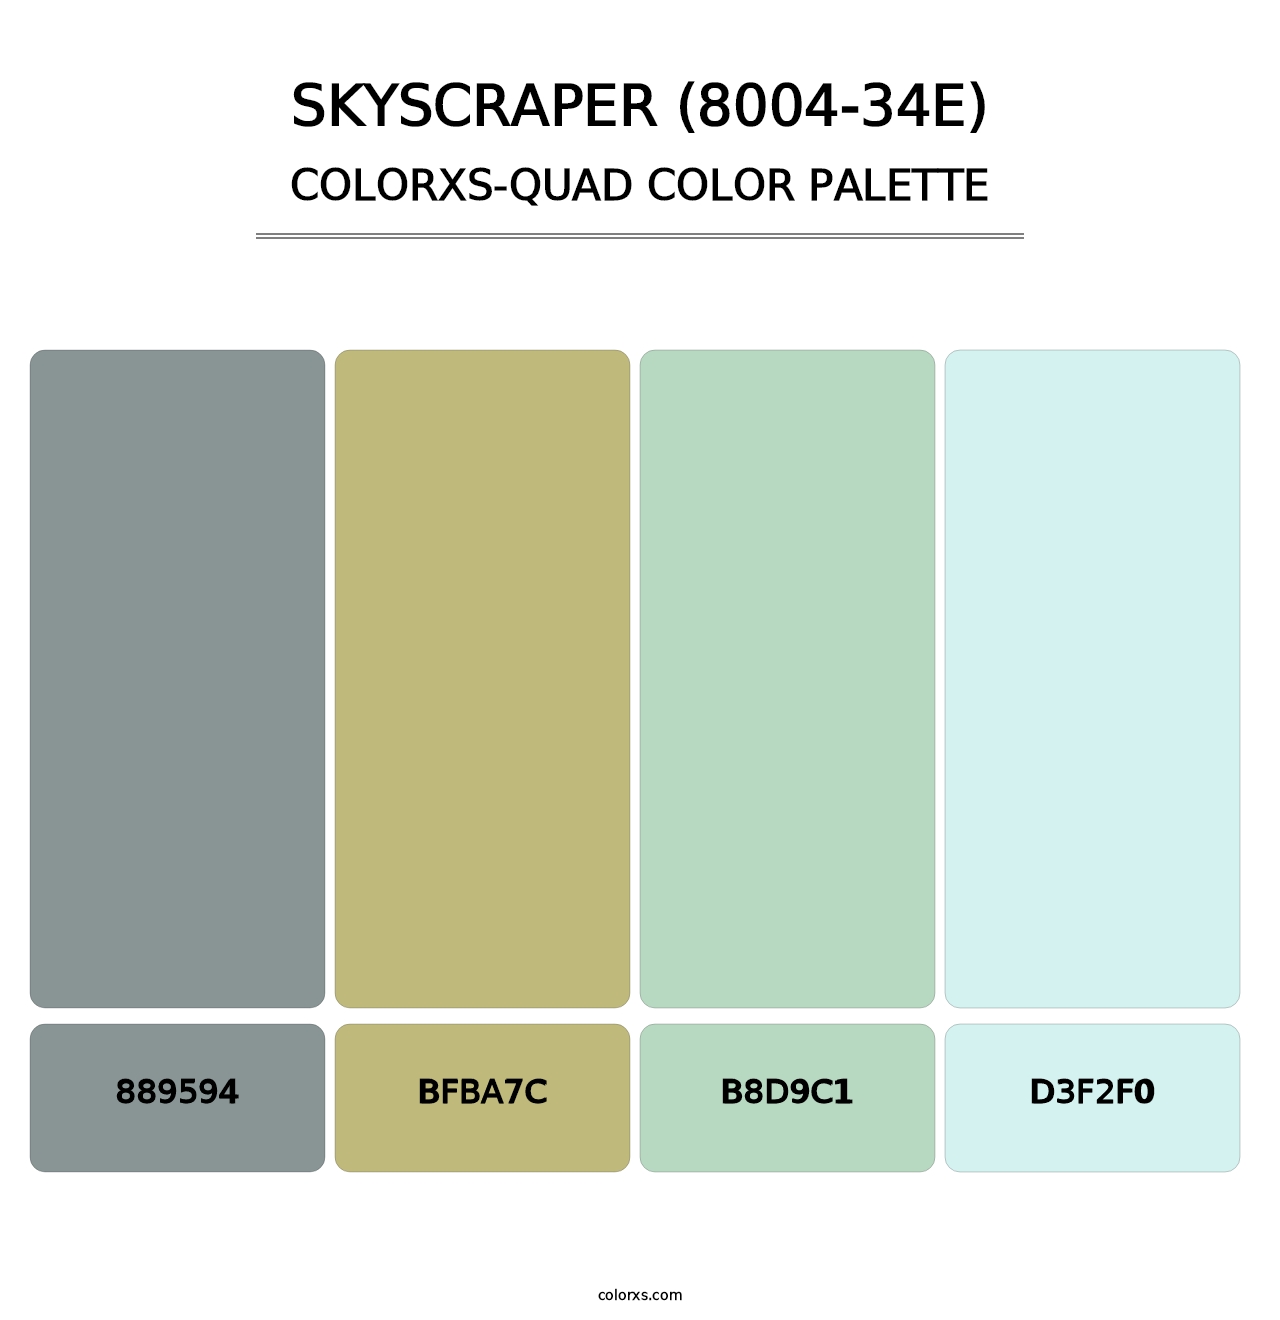 Skyscraper (8004-34E) - Colorxs Quad Palette